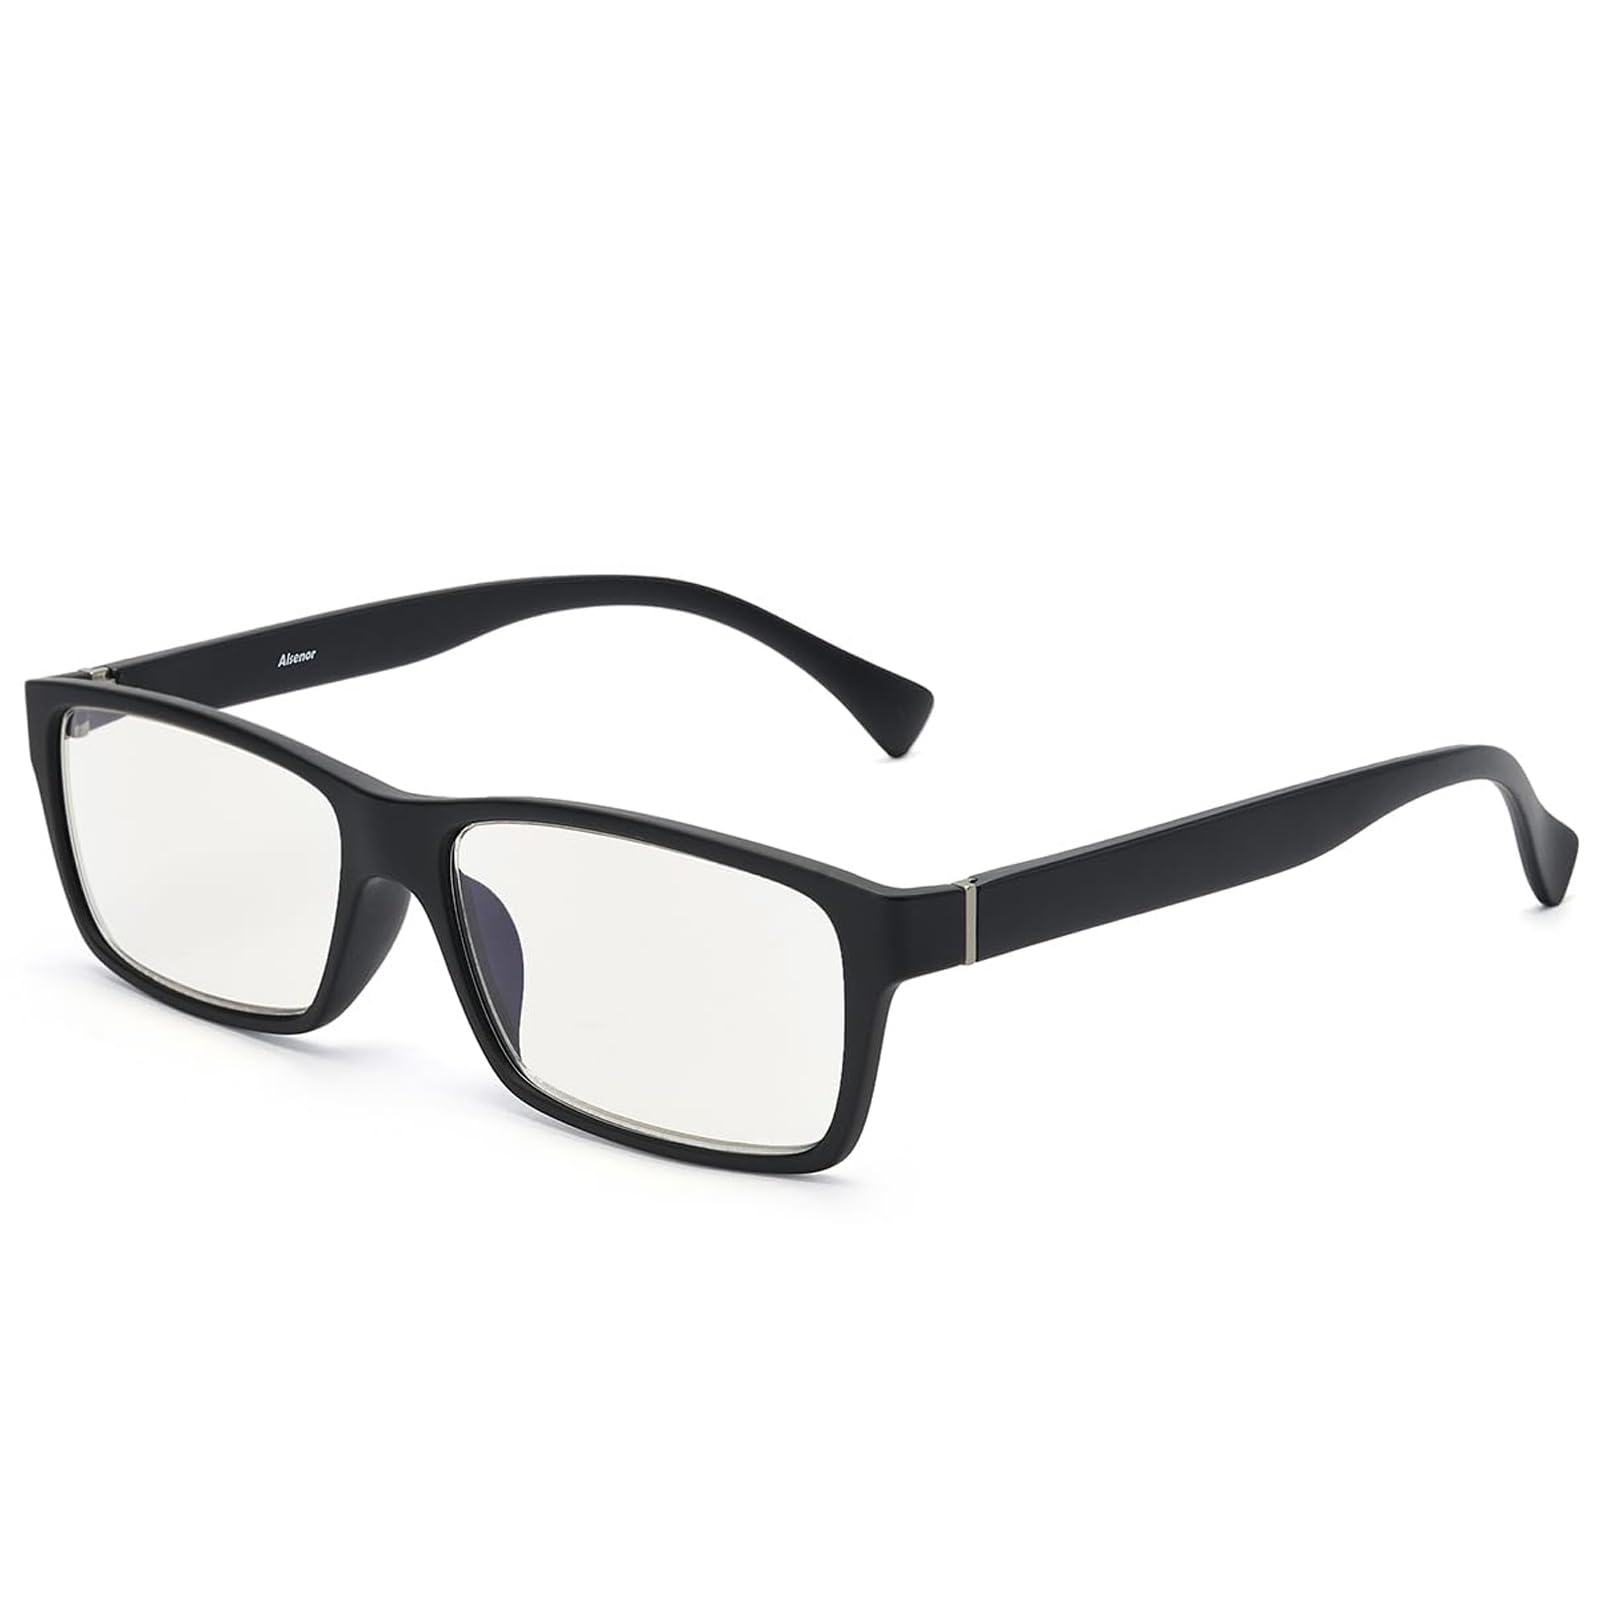 CEETOL 老眼鏡 ブルーライトカット メンズ 超薄レンズ TR90 超弾性 単焦点 おしゃれ シニアグラス リーディンググラス パソコン用 スマホ